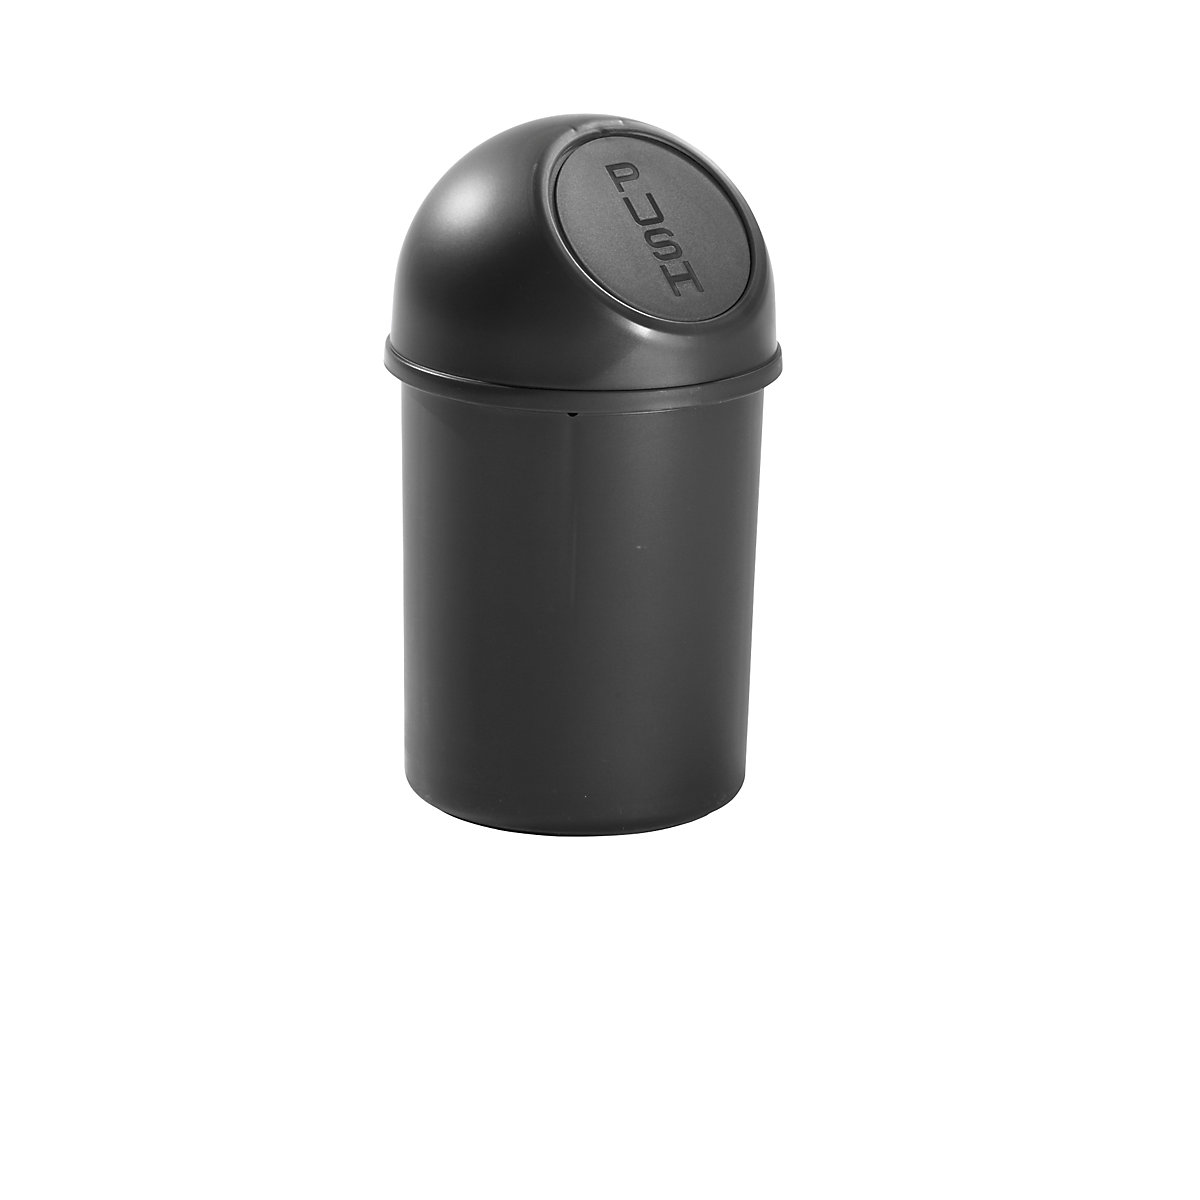 helit – Samozavírací nádoba na odpadky z plastu, objem 6 l, v x Ø 375 x 216 mm, černá, bal.j. 6 ks